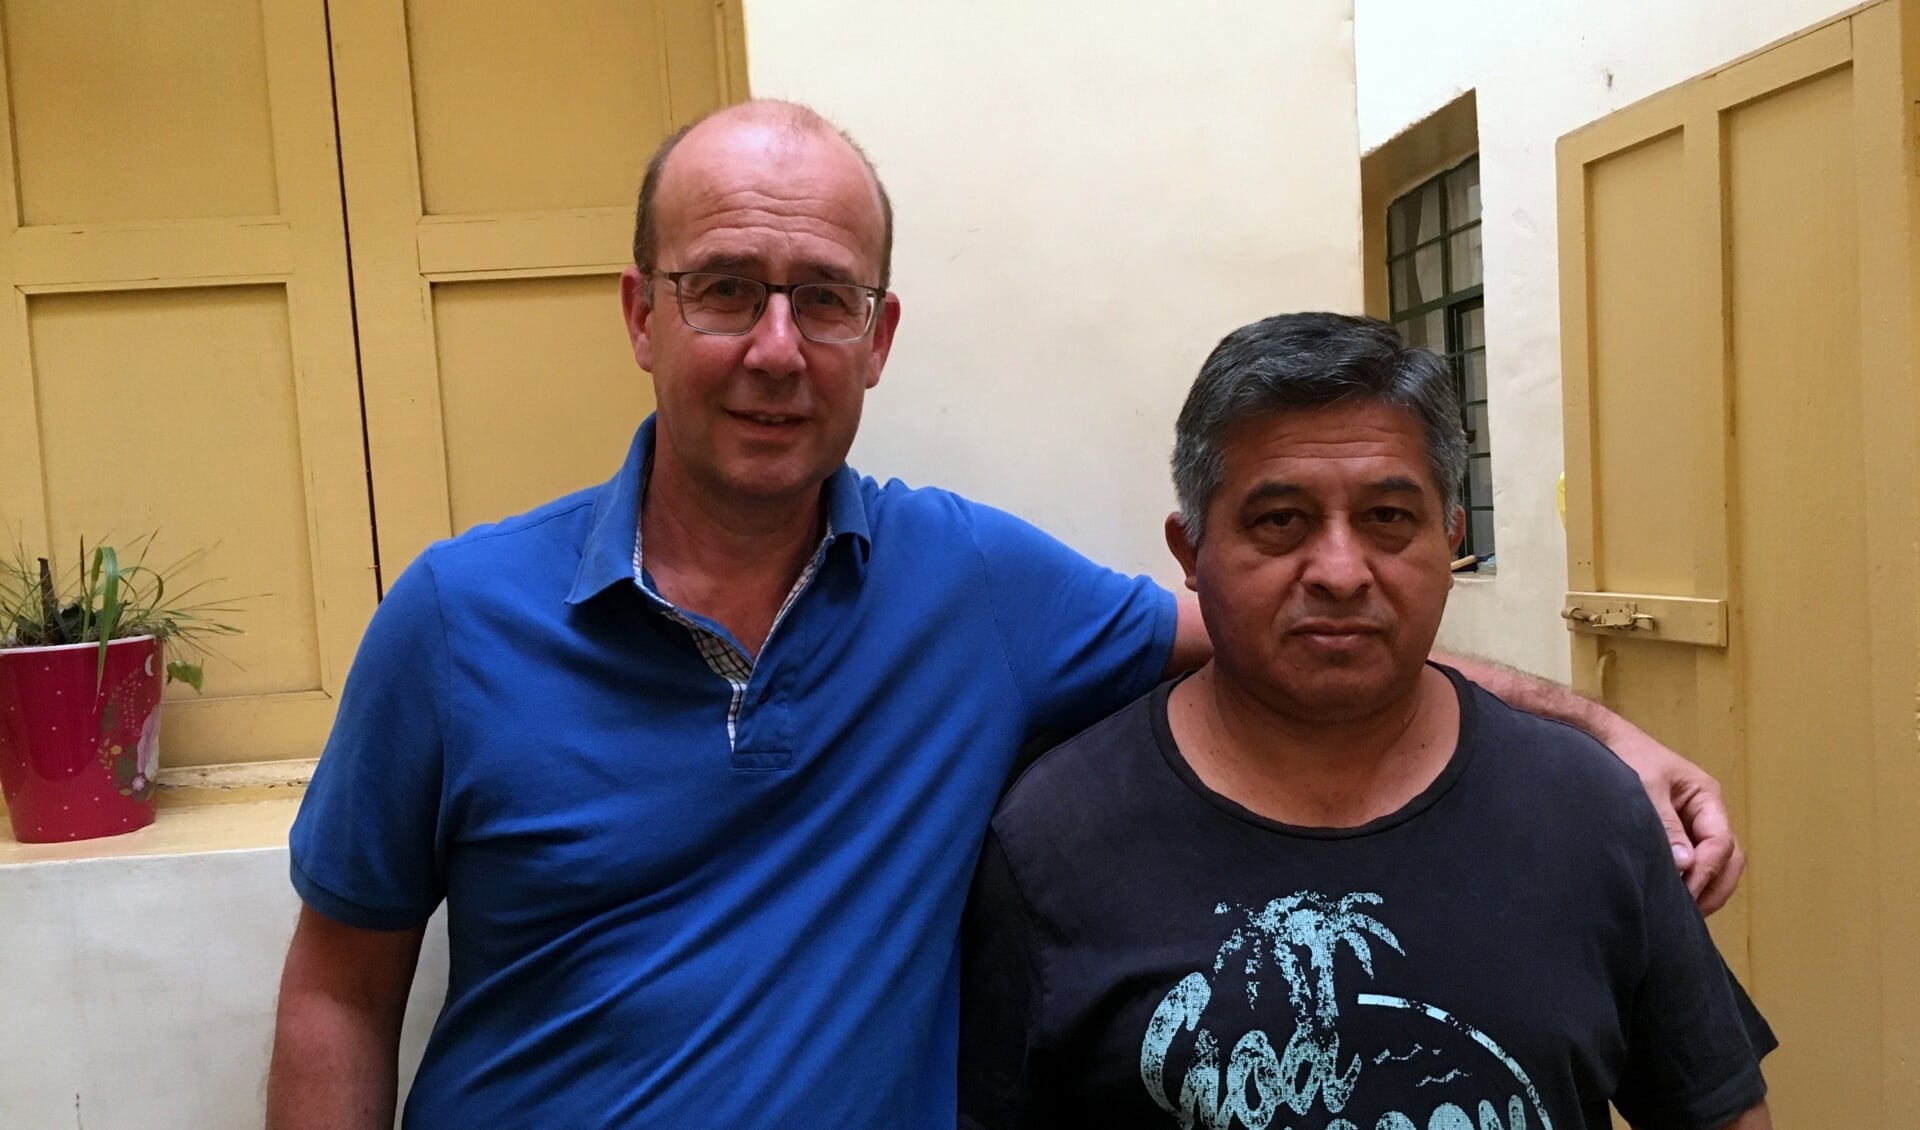 Edwin Michielsen en zijn zwager Jaime in het huis in Peru. FOTO FAMILIE MICHIELSEN